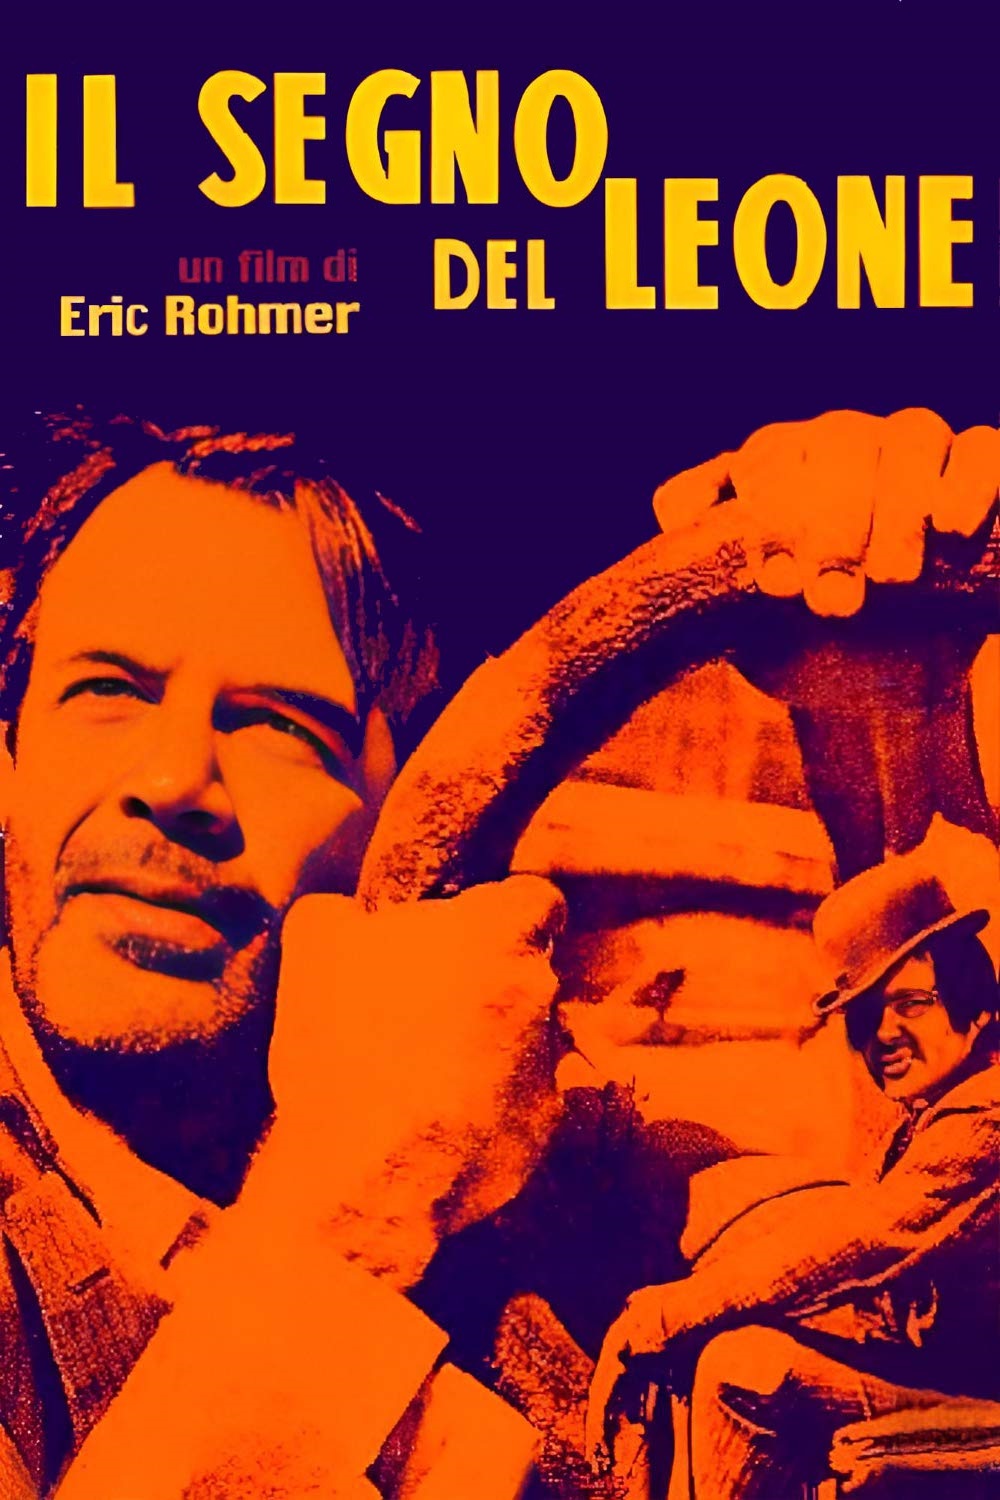 Il segno del leone [B/N] (1959)